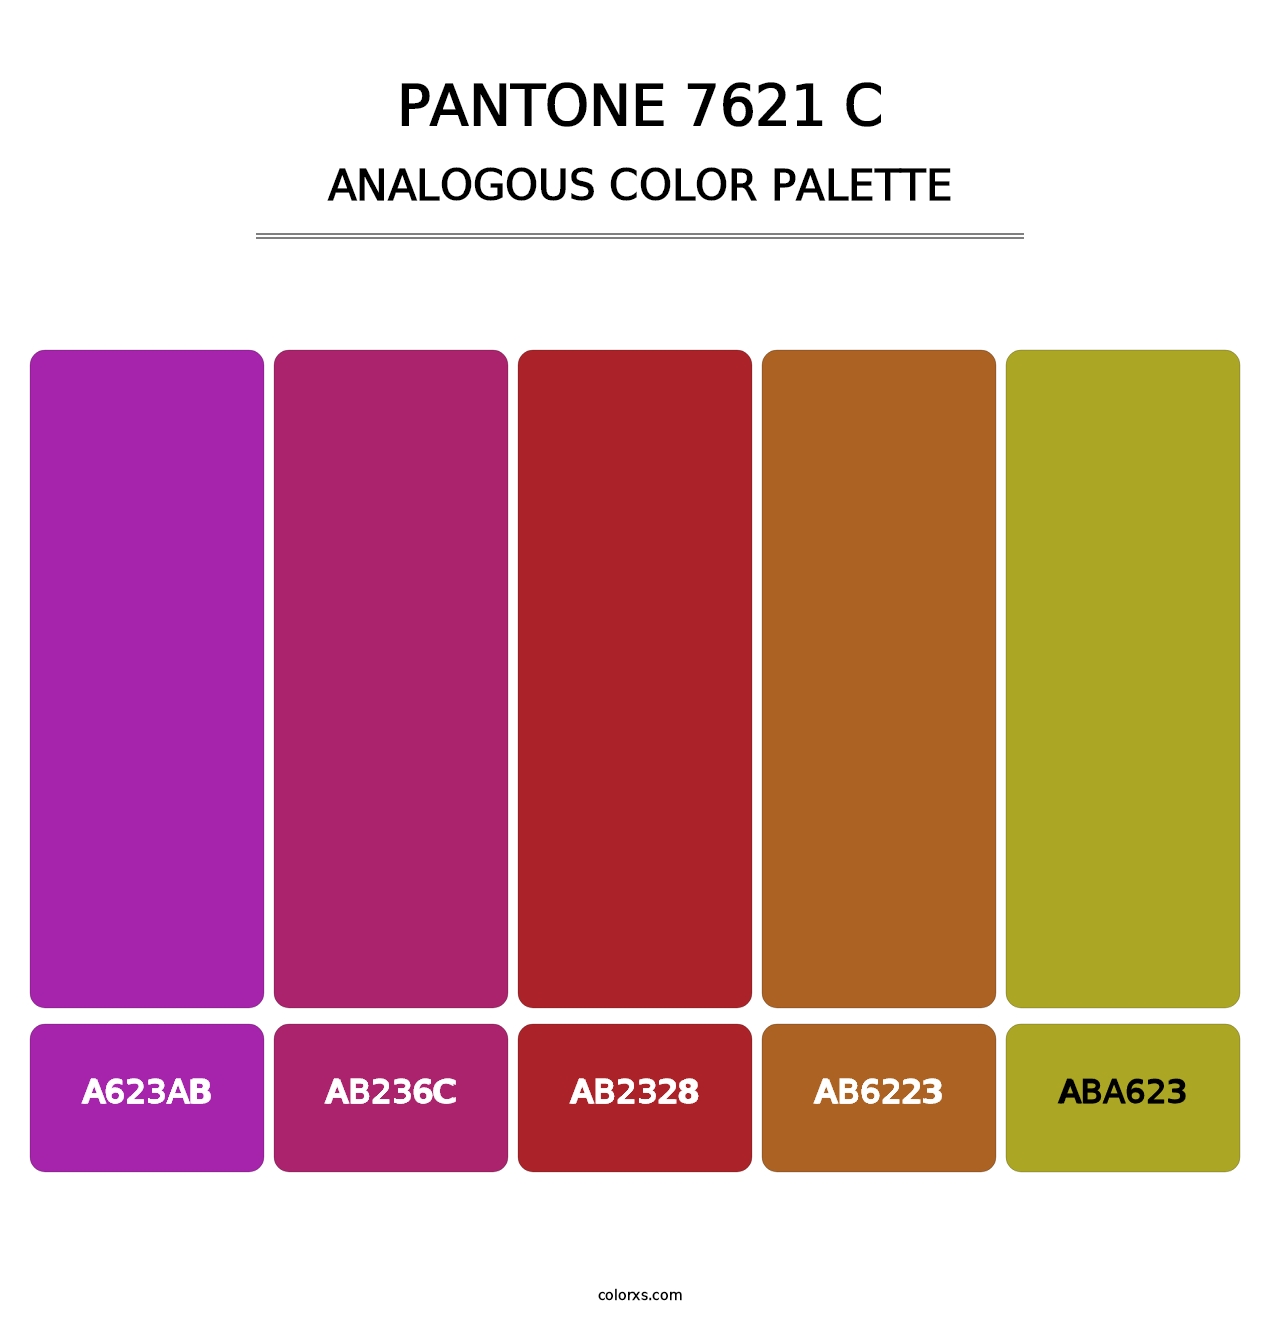 PANTONE 7621 C - Analogous Color Palette